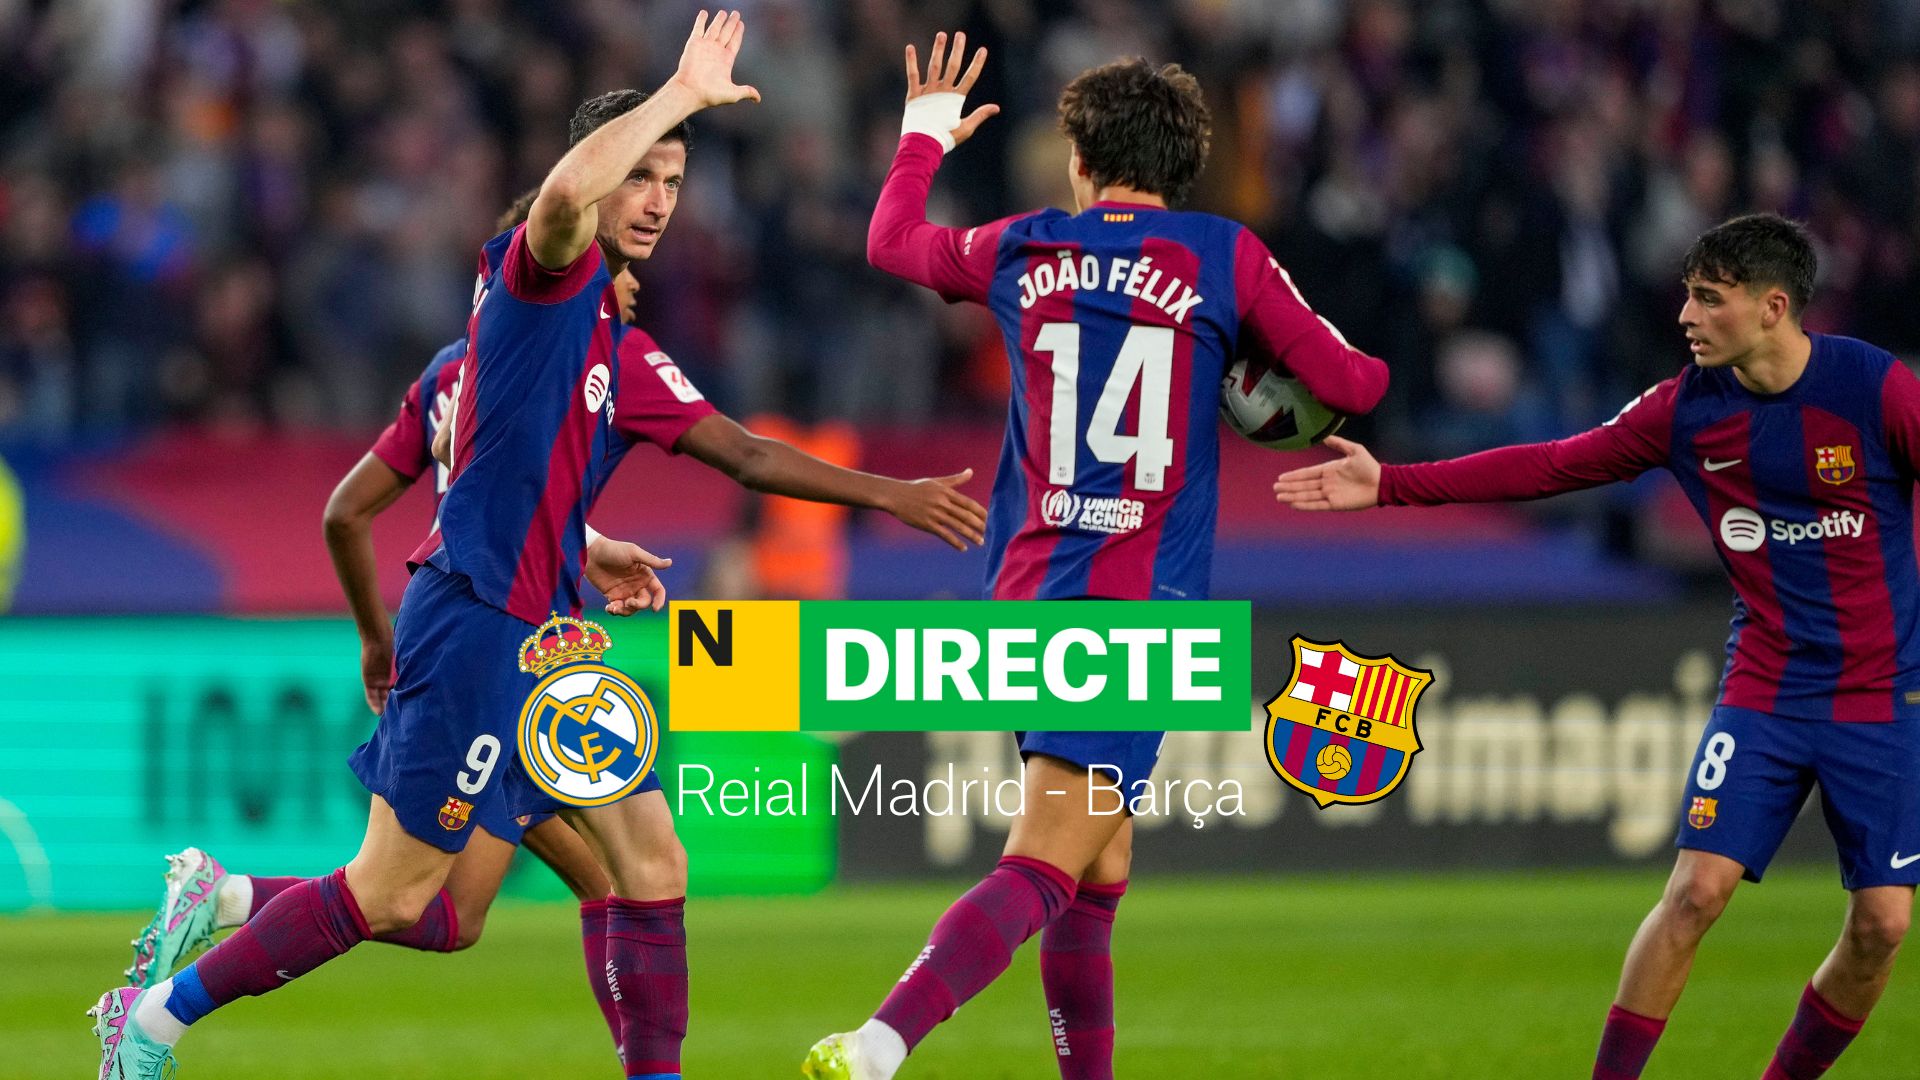 Reial Madrid - Barça, final de la Supercopa d'Espanya, DIRECTE | Resultat, resum i gols